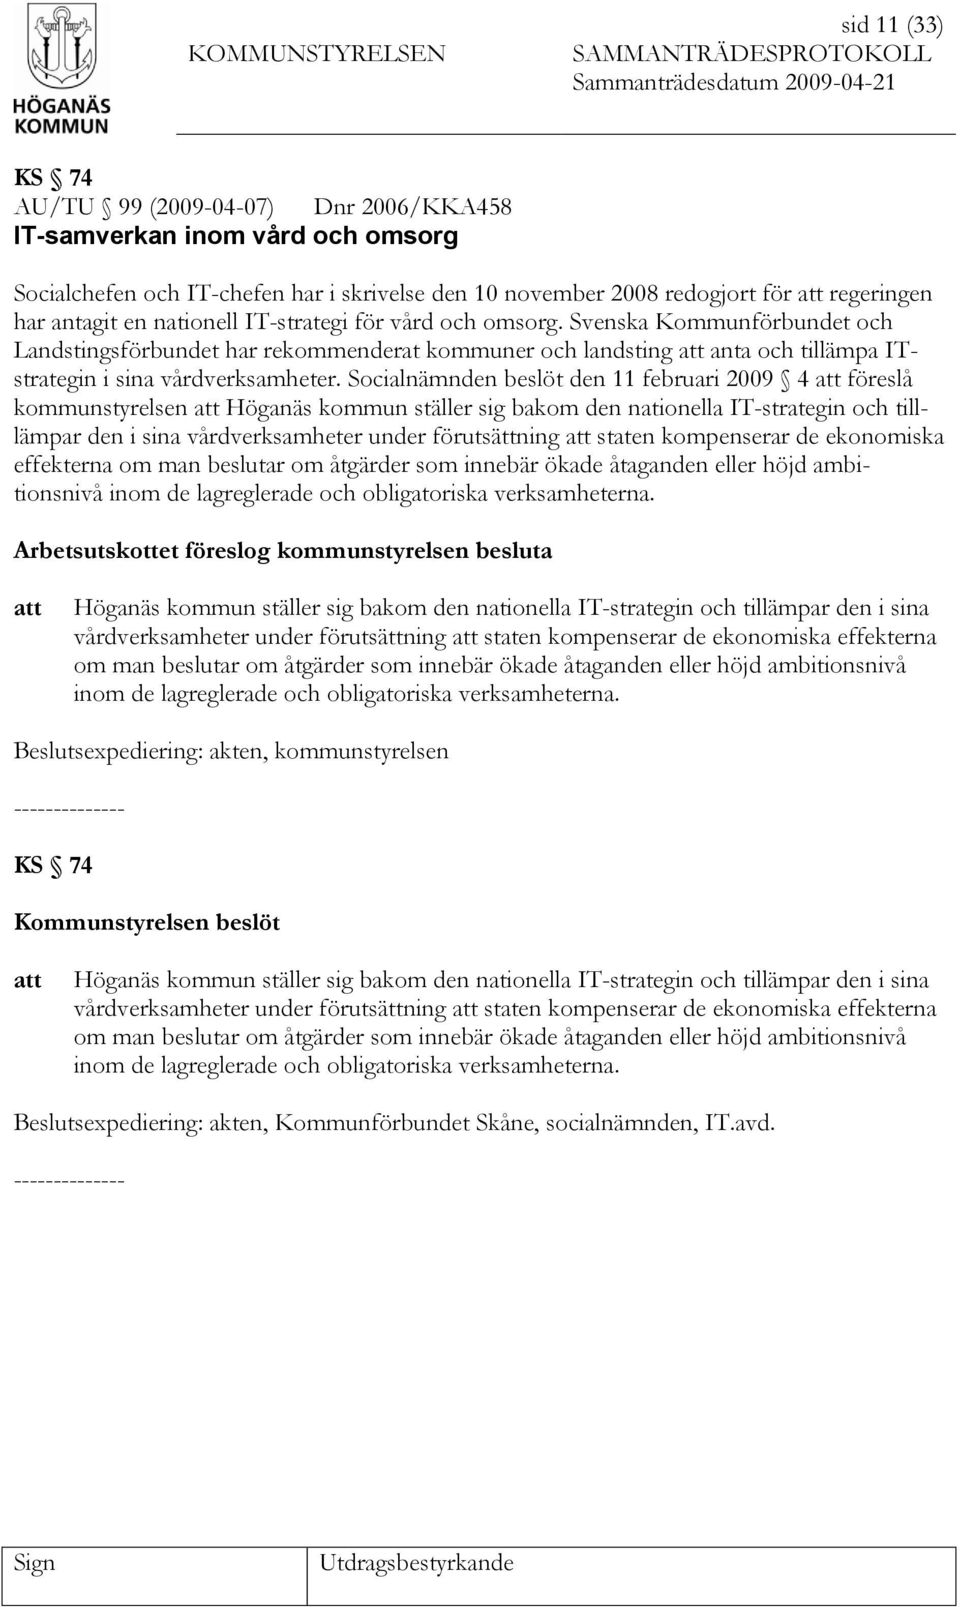 Socialnämnden beslöt den 11 februari 2009 4 föreslå kommunstyrelsen Höganäs kommun ställer sig bakom den nationella IT-strategin och tilllämpar den i sina vårdverksamheter under förutsättning staten